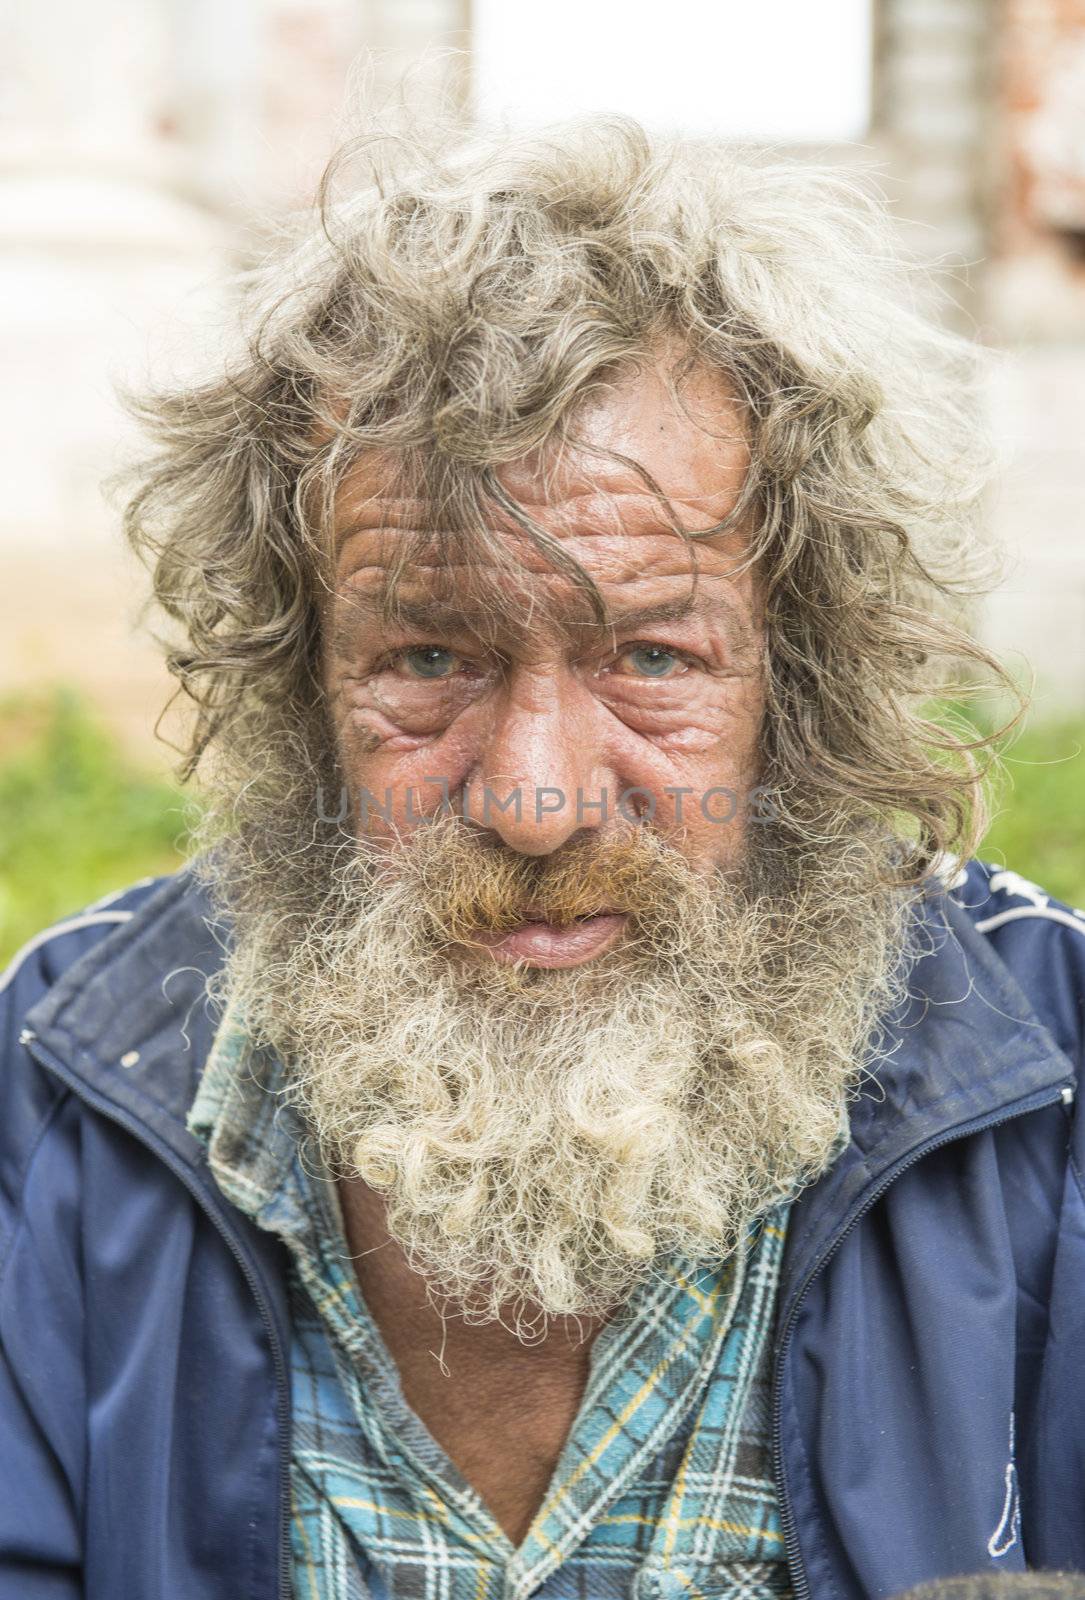 Portrait of the elderly man. Taken in Myshkin village, Russia on July 2012.